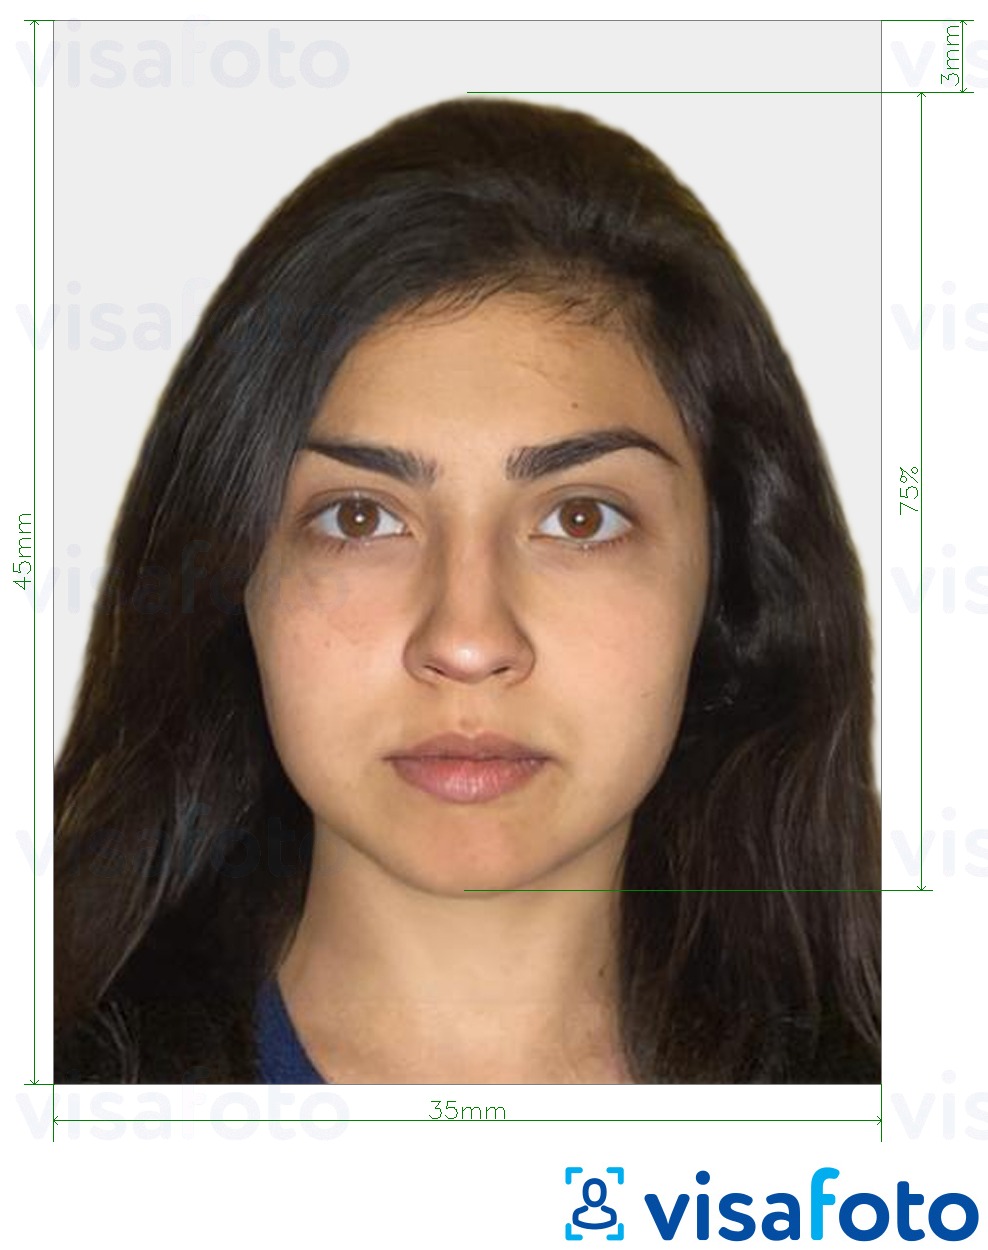 Voorbeeld van foto voor India paspoort 35x45 mm met exacte maatspecificatie